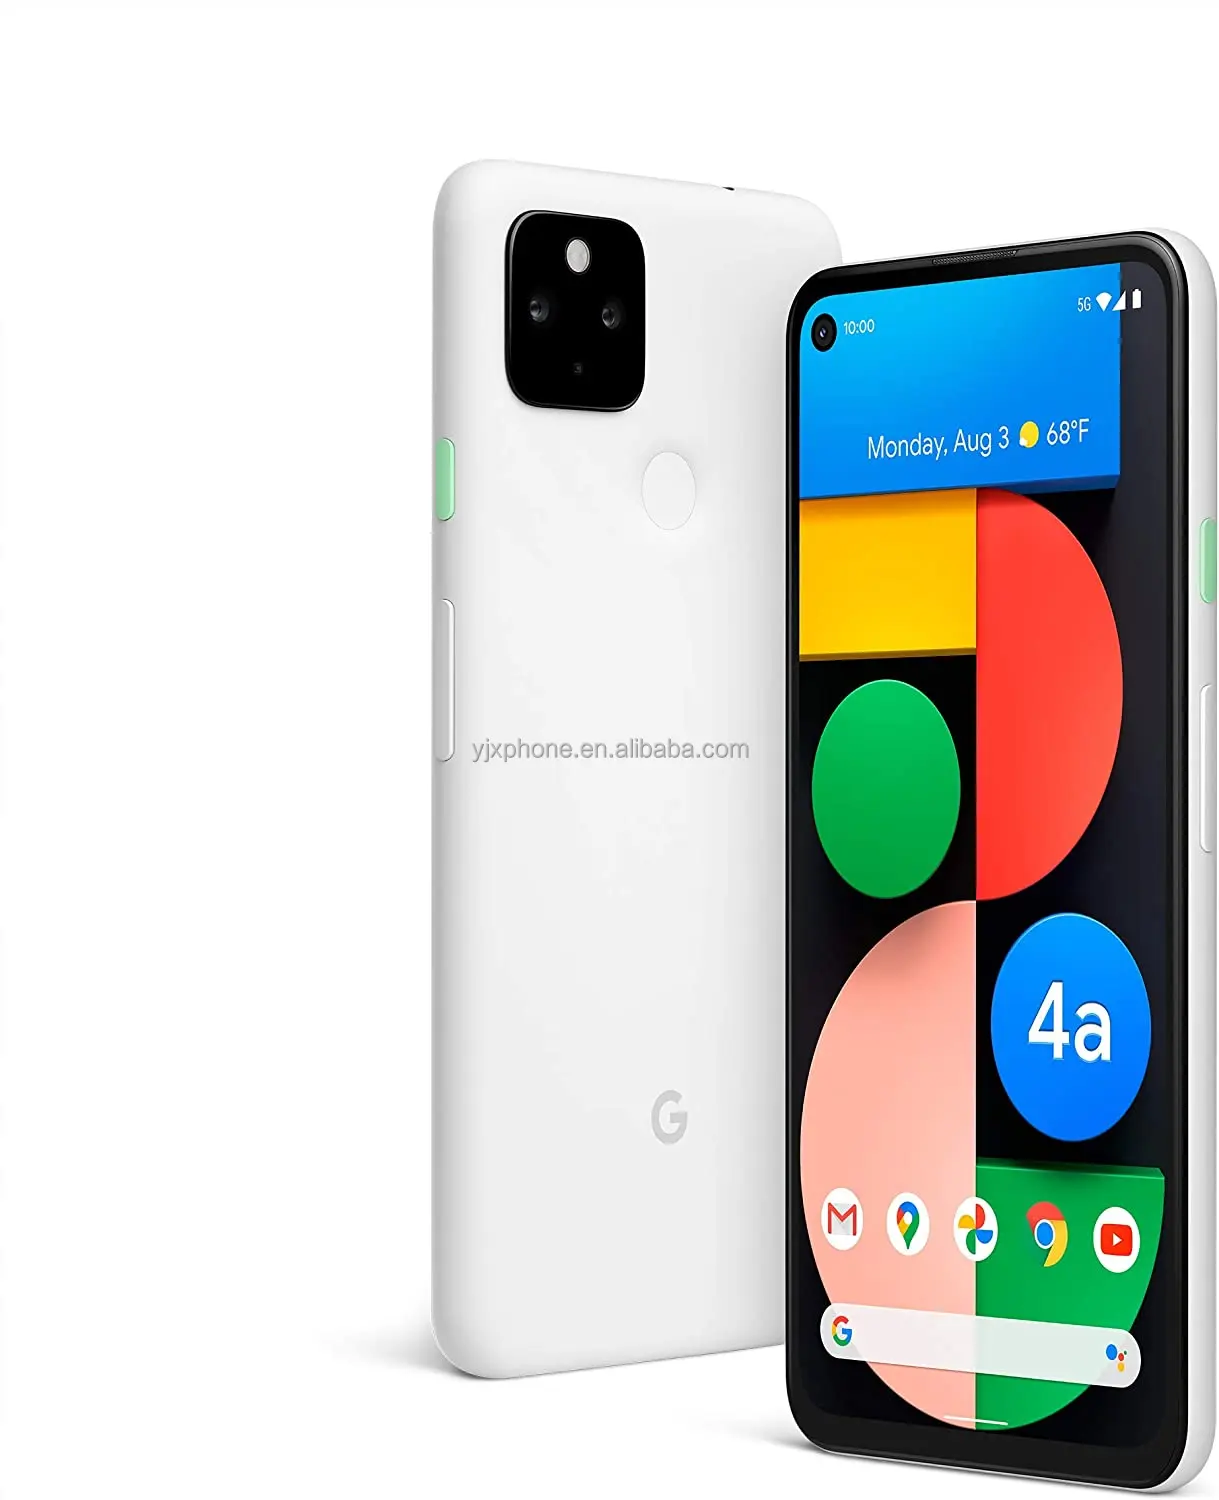 Оригинальный телефон с Android, используемый Мобильный телефон для Google Pixel 4A 5G 128GB 6GB RAM Factory OEM, разблокировка сотовых телефонов для пикселей 4A 5G